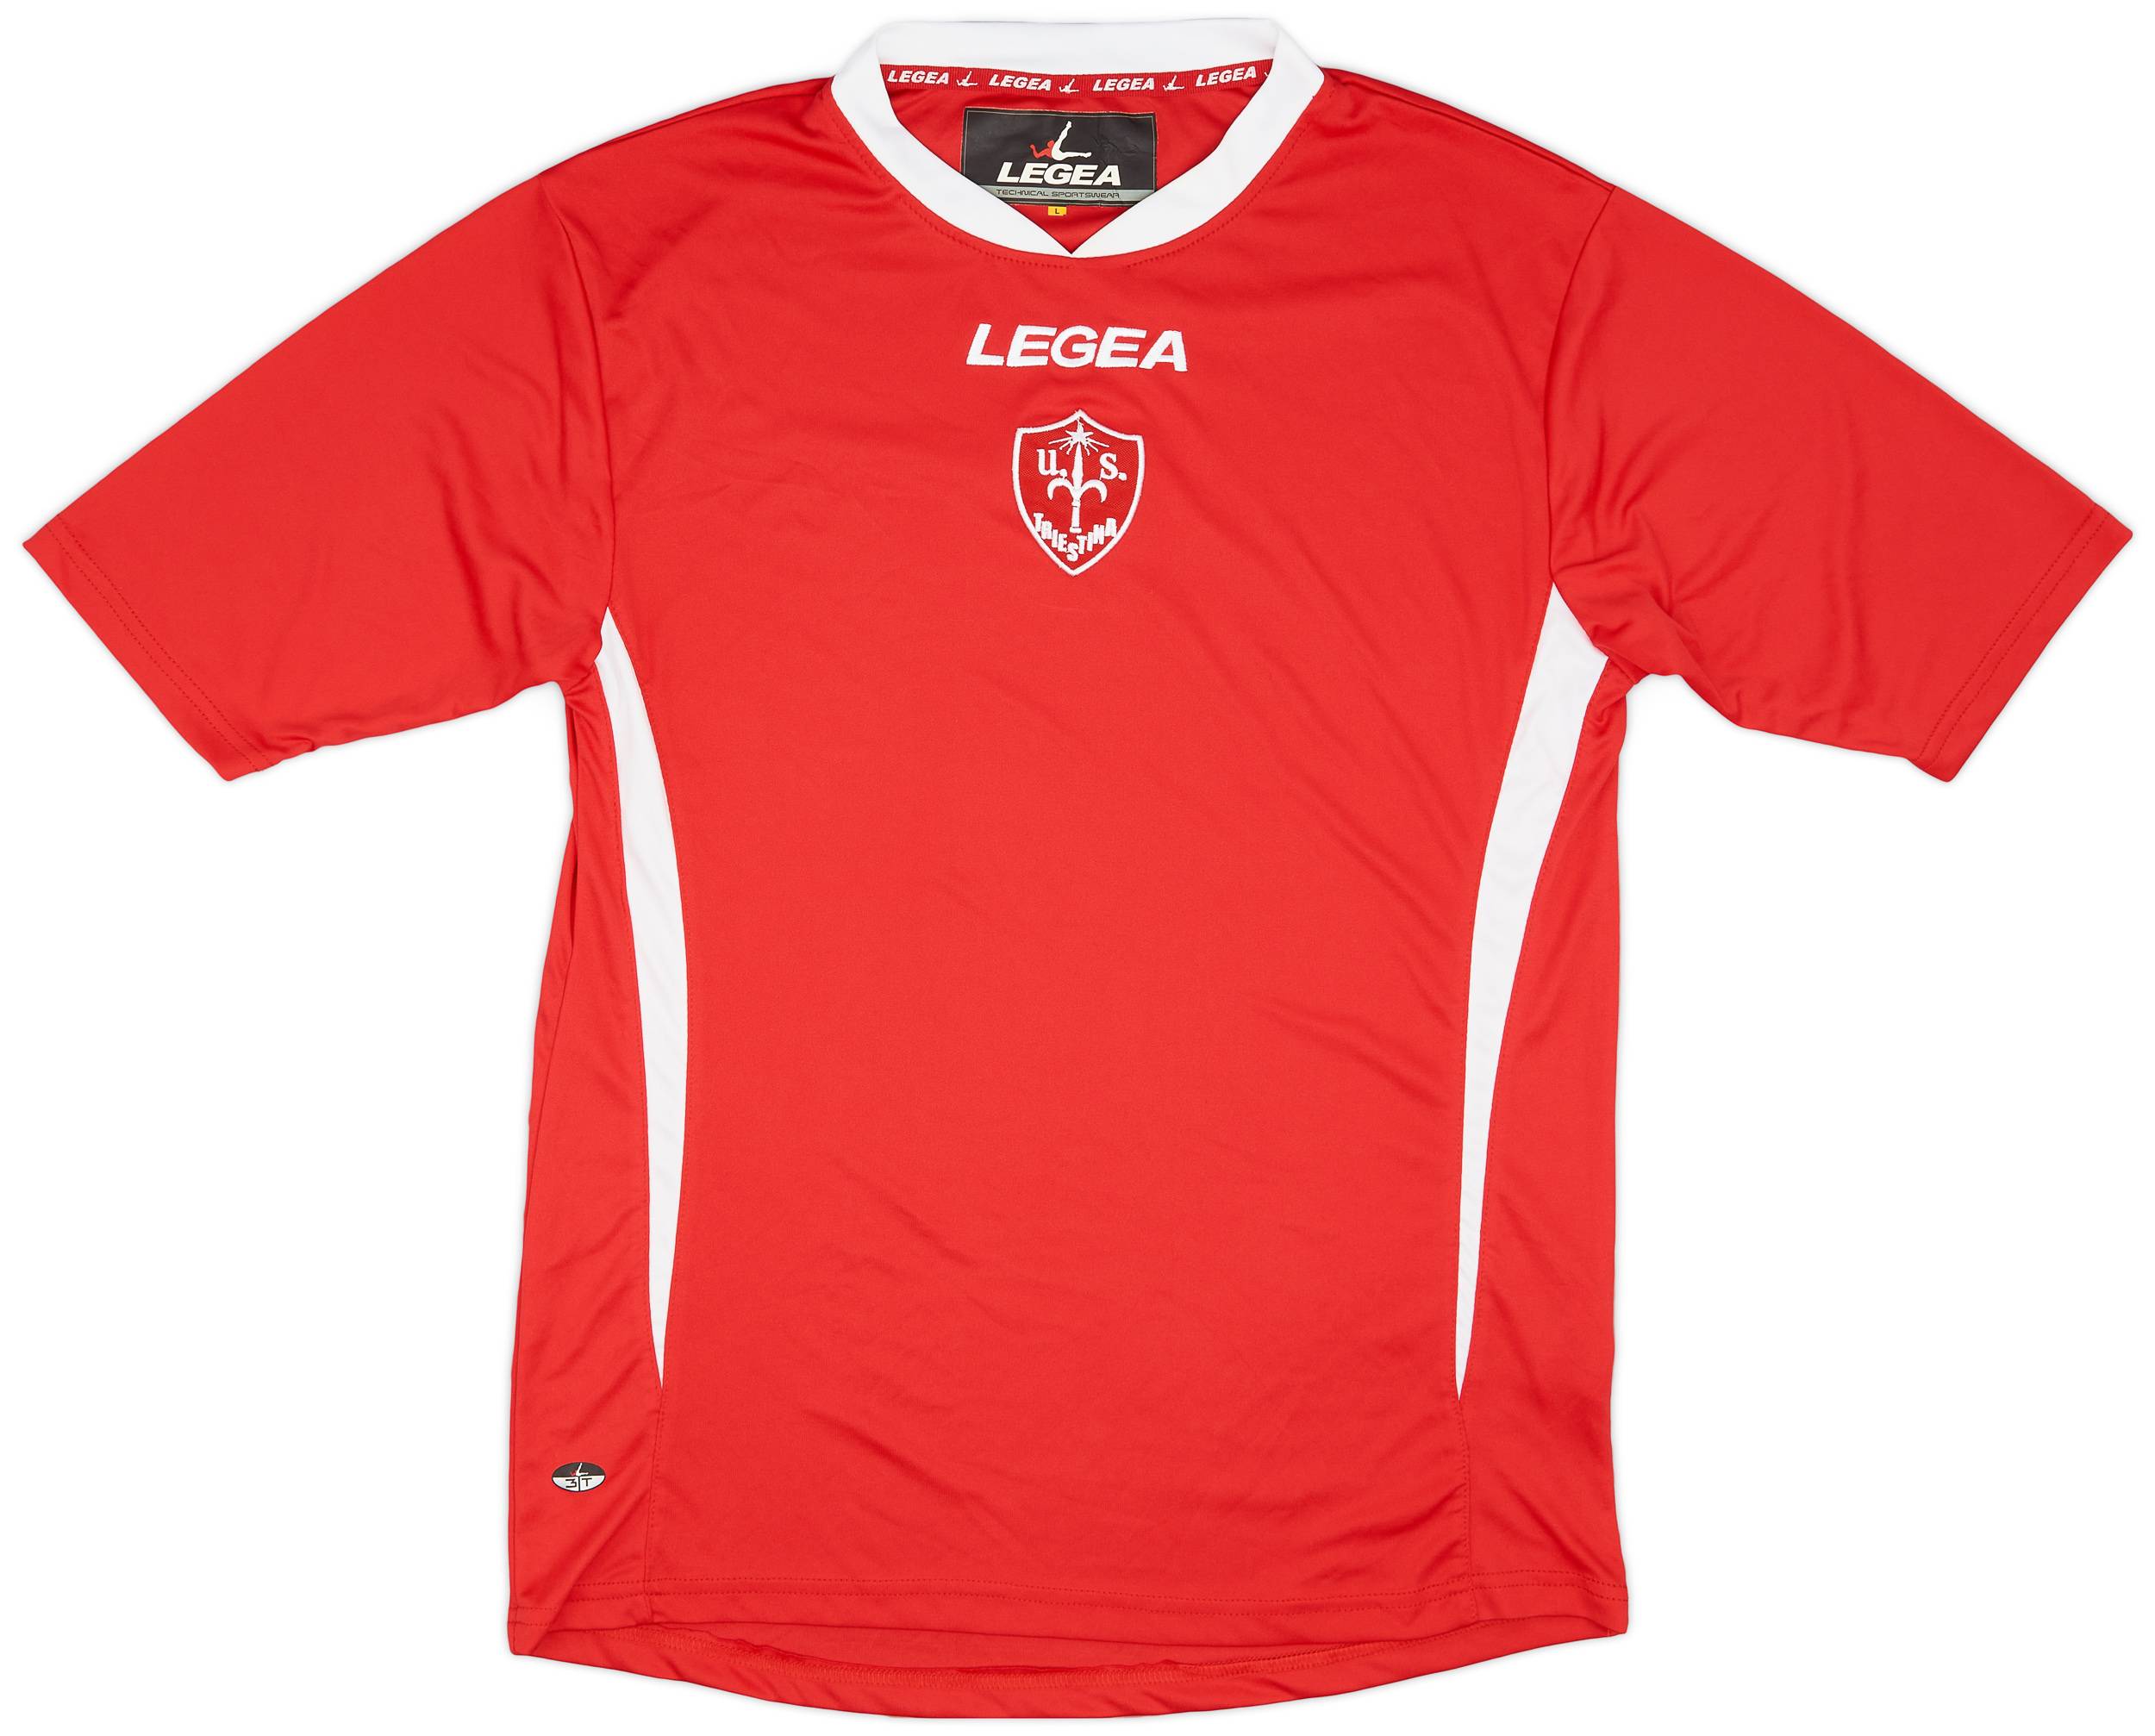 2011-12 Triestina Legea Training Shirt - 9/10 - (L)